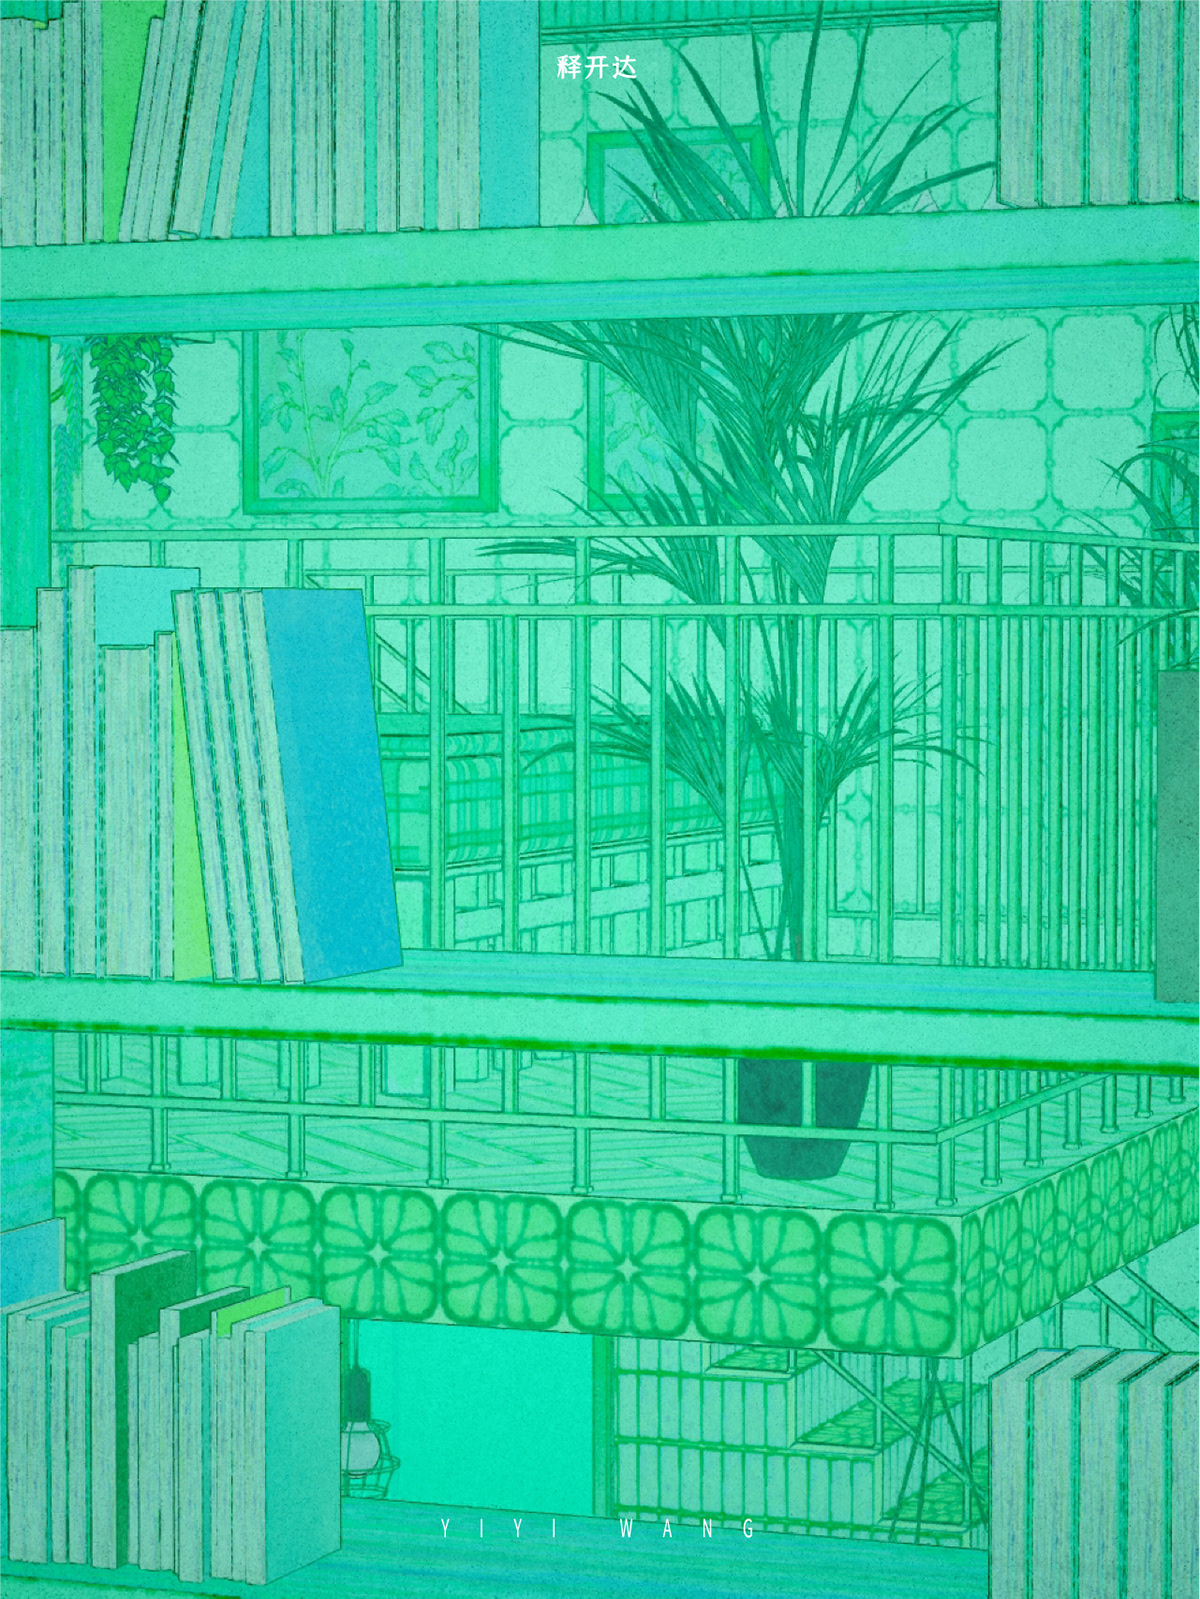 3D Render architecture artwork digital illustration greenhouse